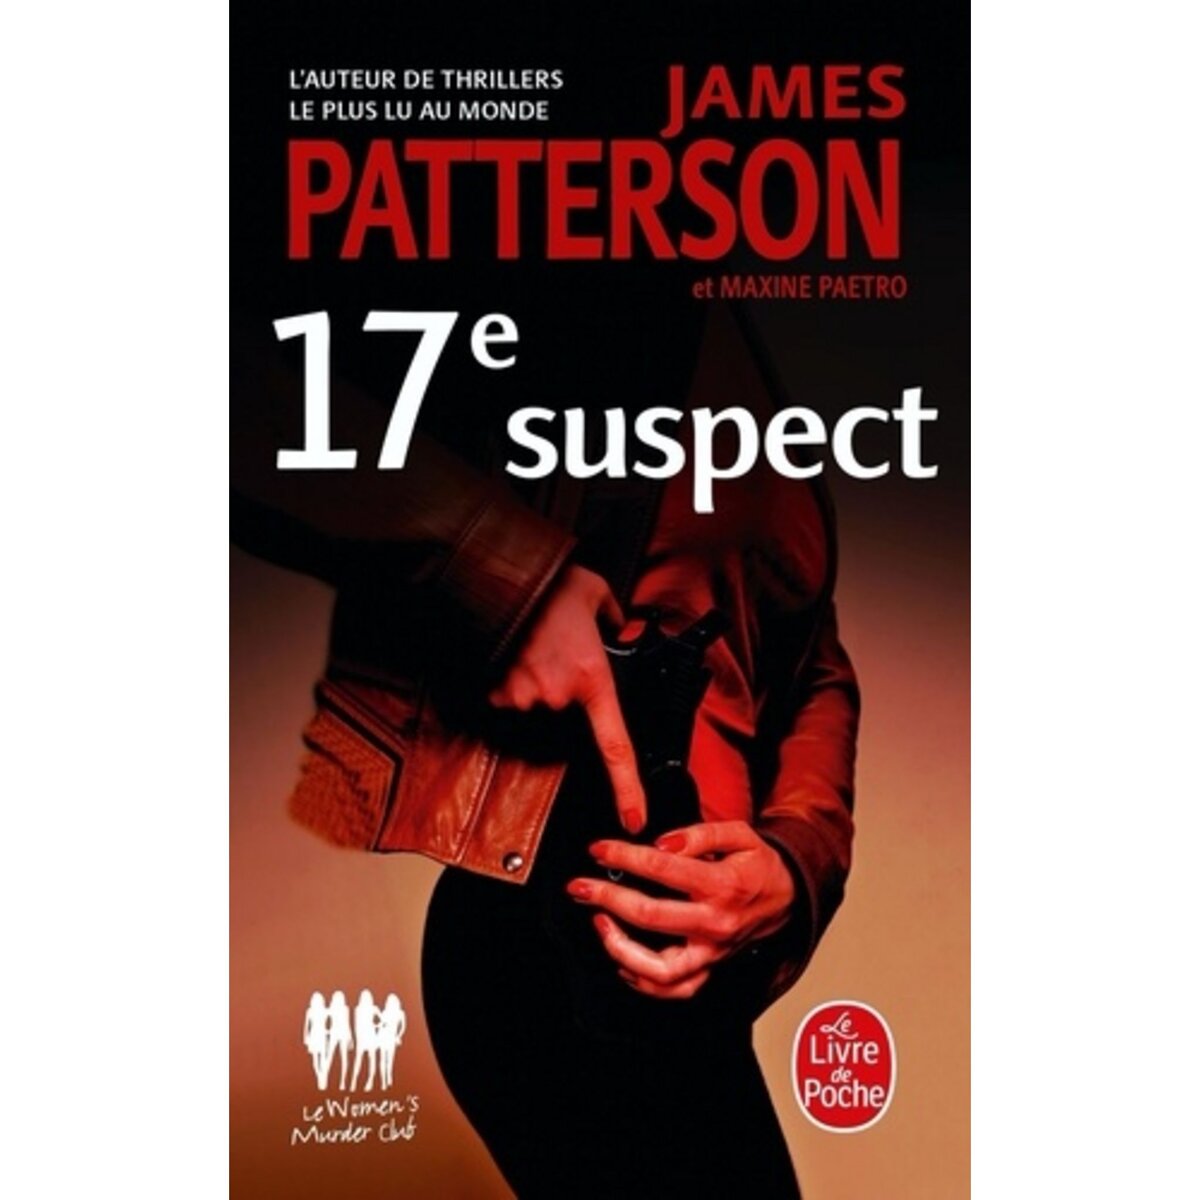  17E SUSPECT, Patterson James